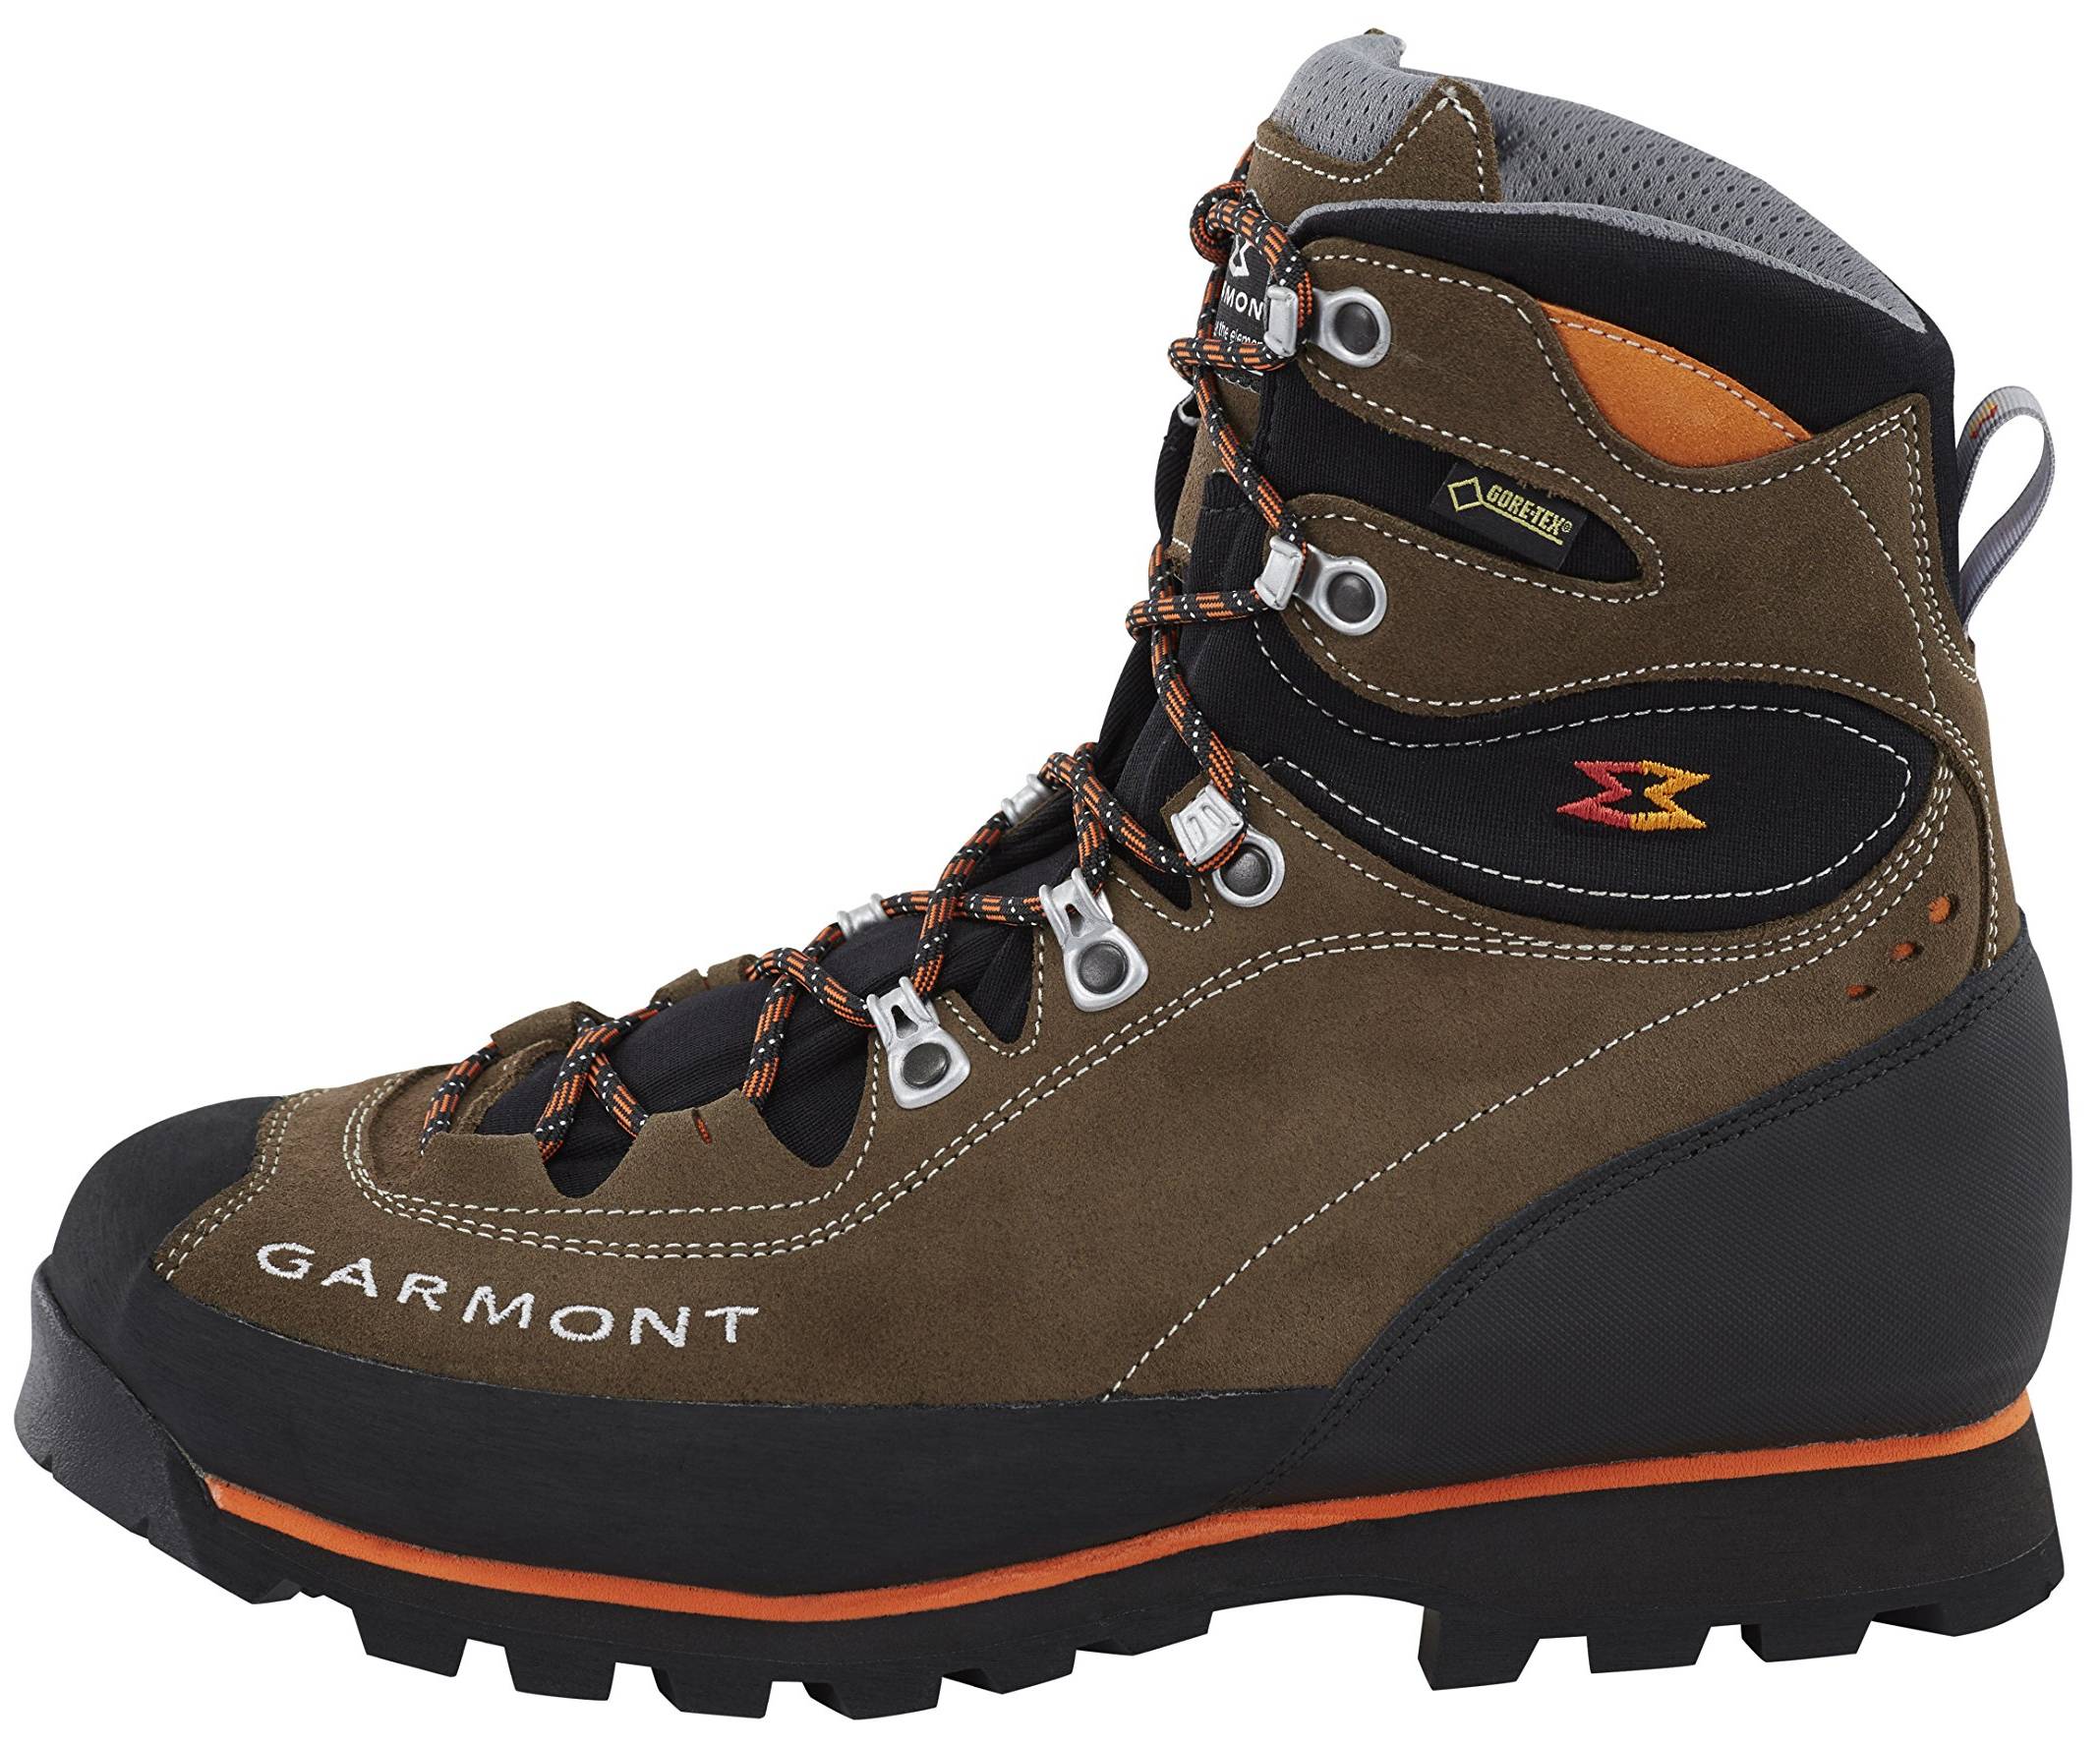 garmont walking boots uk